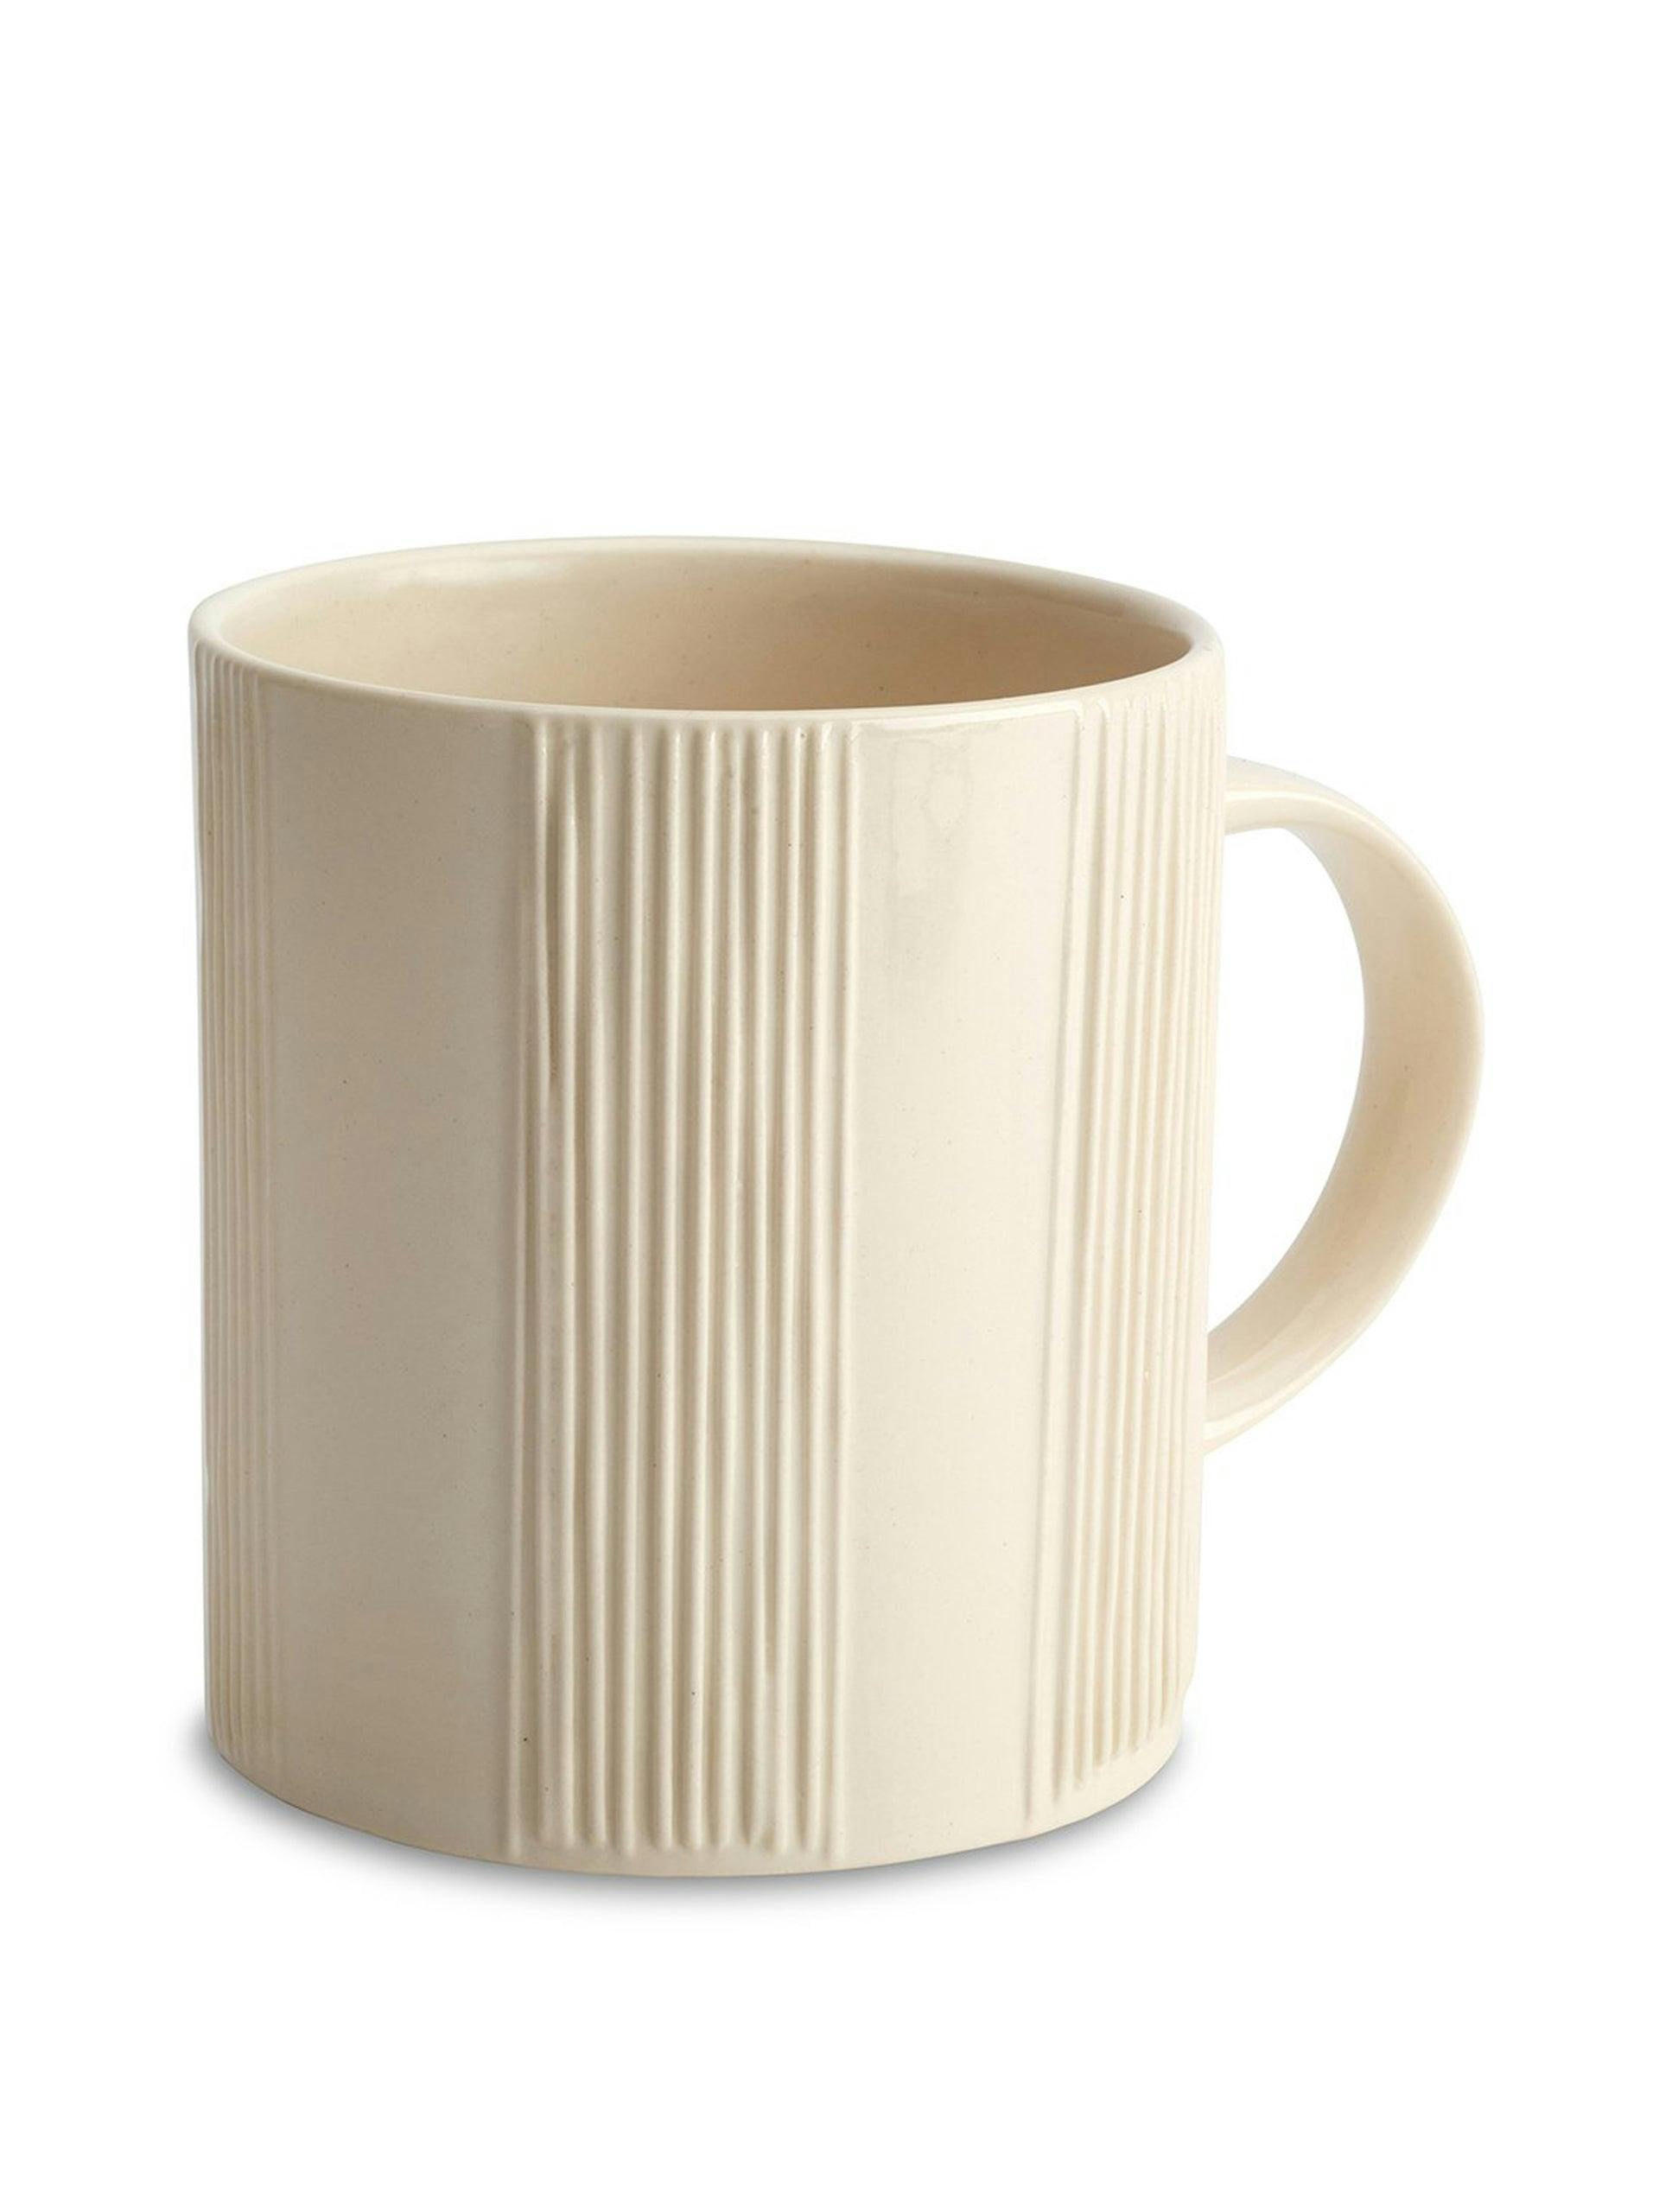 Cream ceramic mug with embossed lines